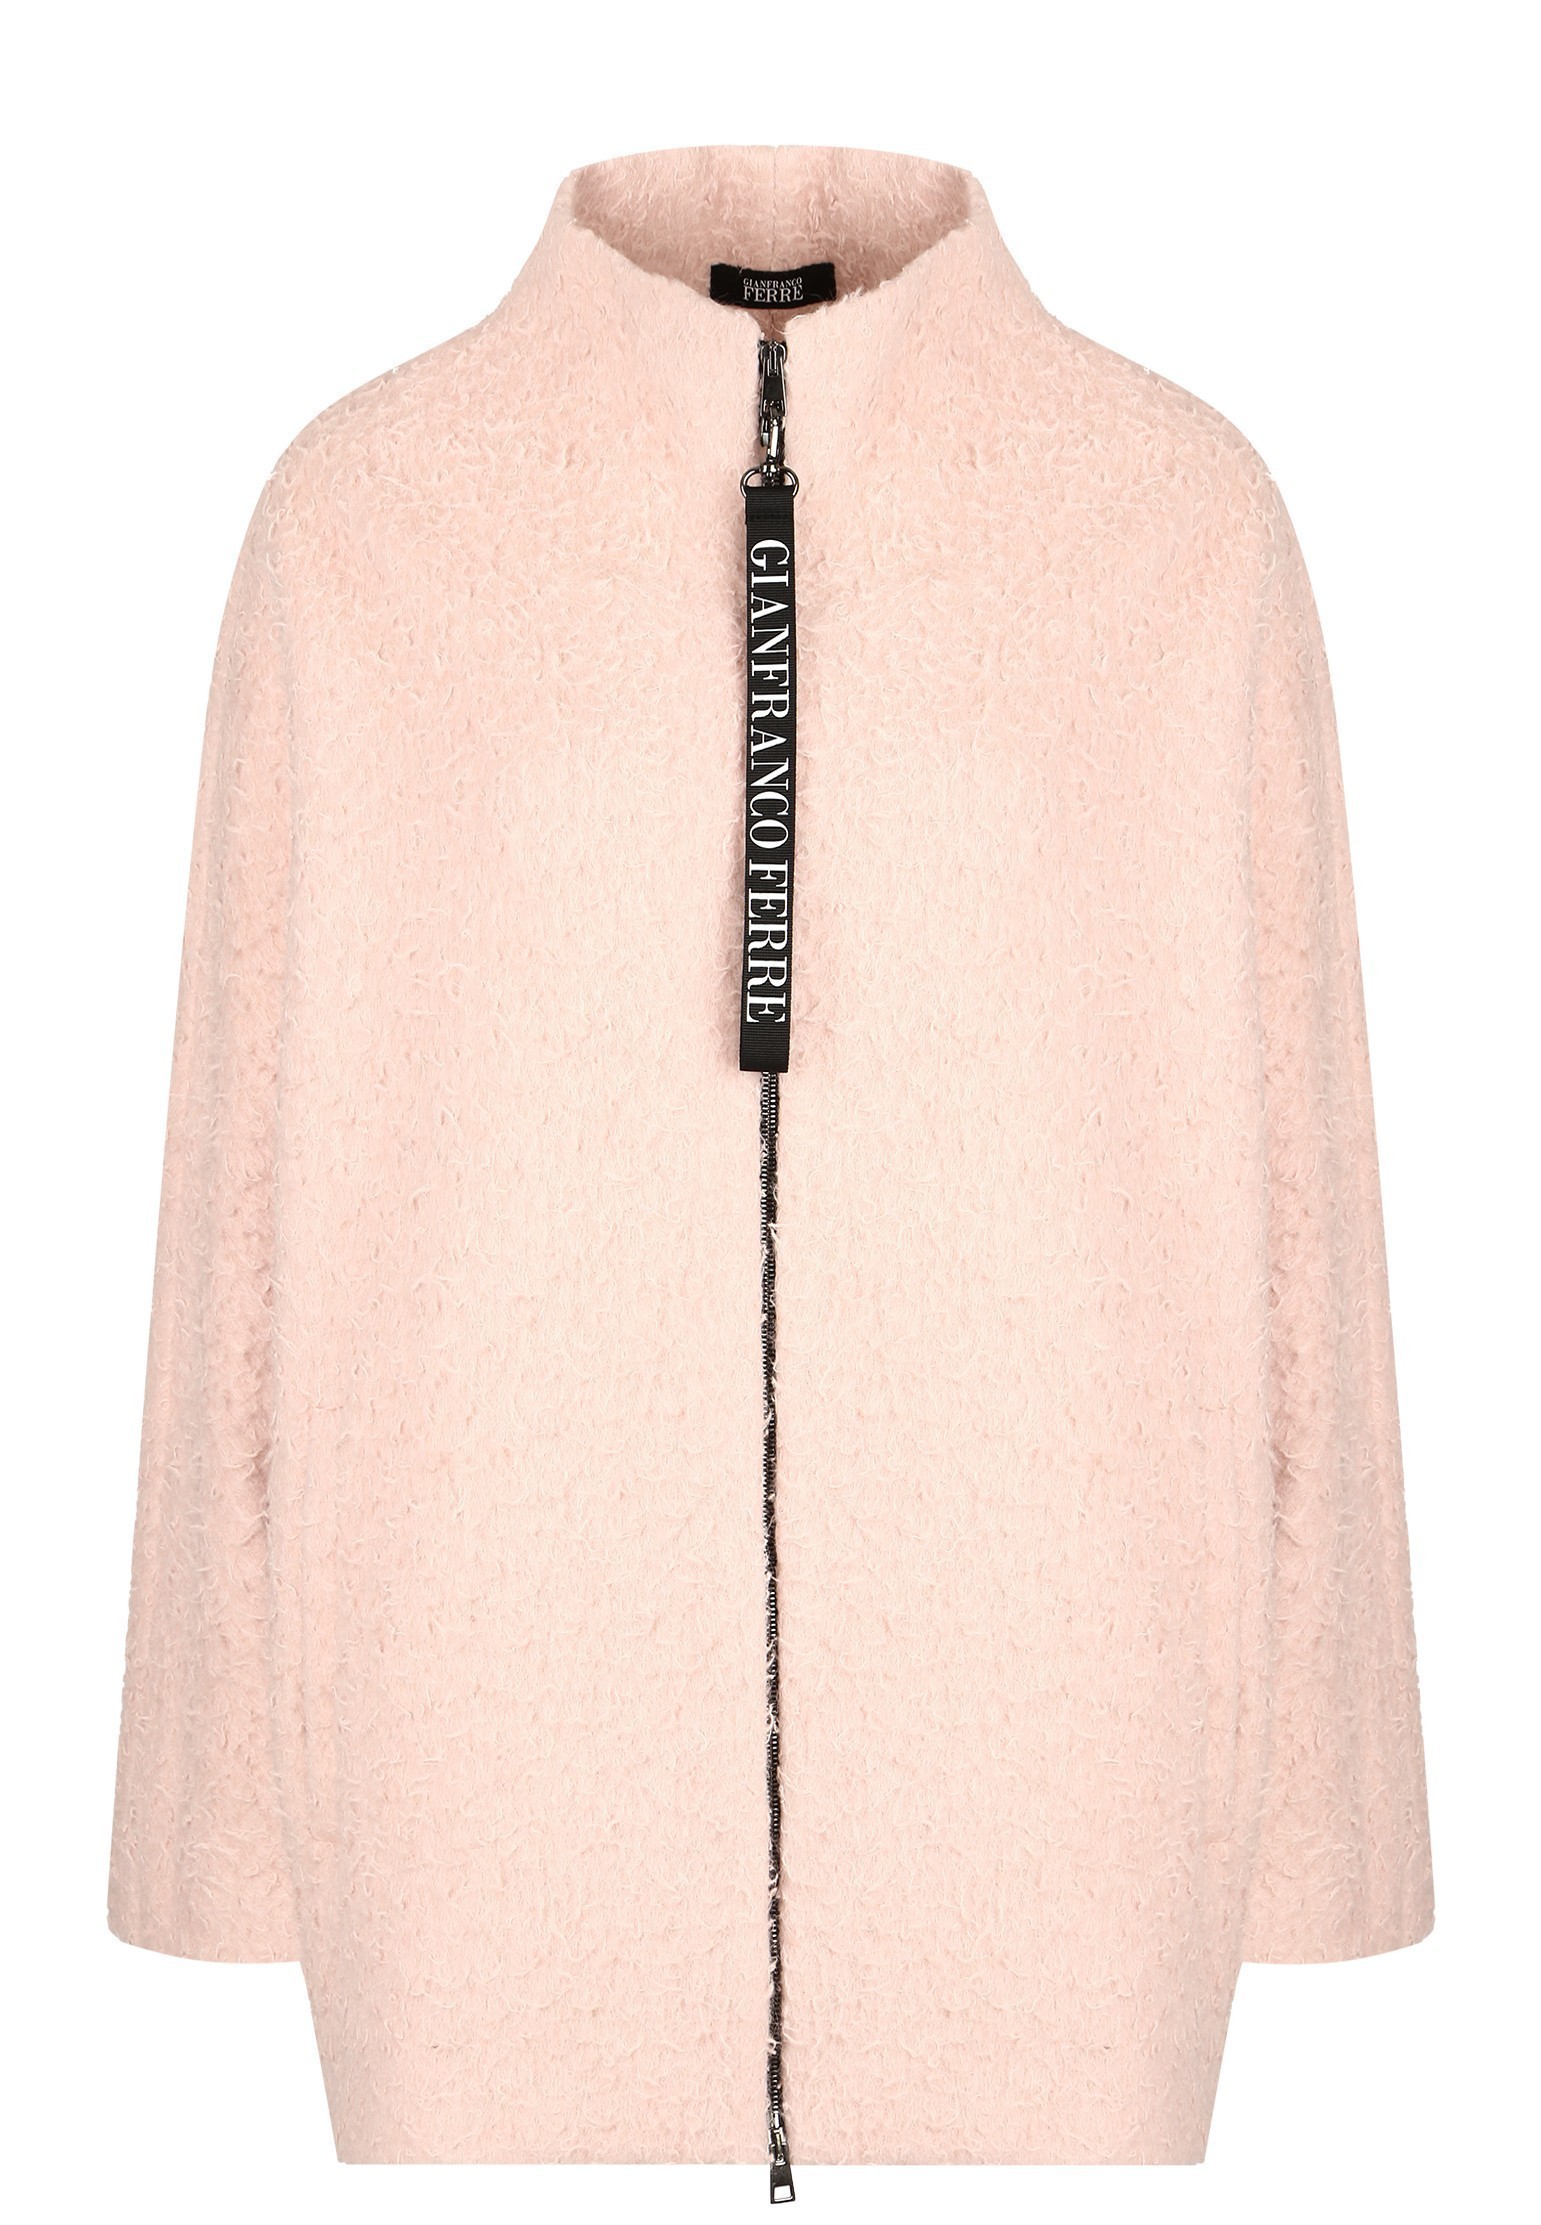 Пальто женское Gianfranco Ferre 130702 розовое 2XL